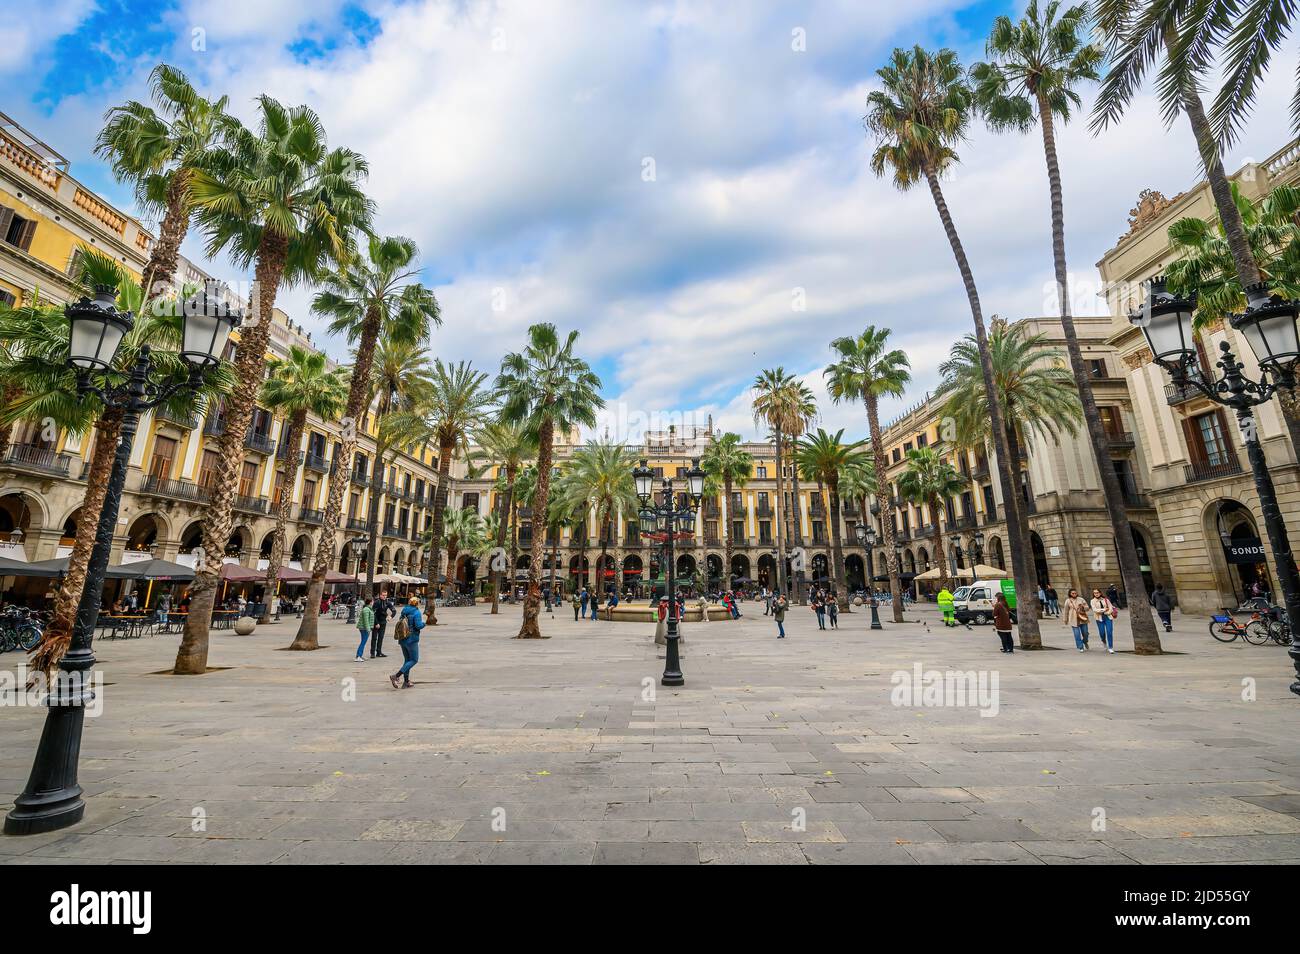 Barcellona, Spagna. Plaza Real - la piazza, con lanterne disegnate da Gaudi e la Fontana delle tre grazie al centro Foto Stock